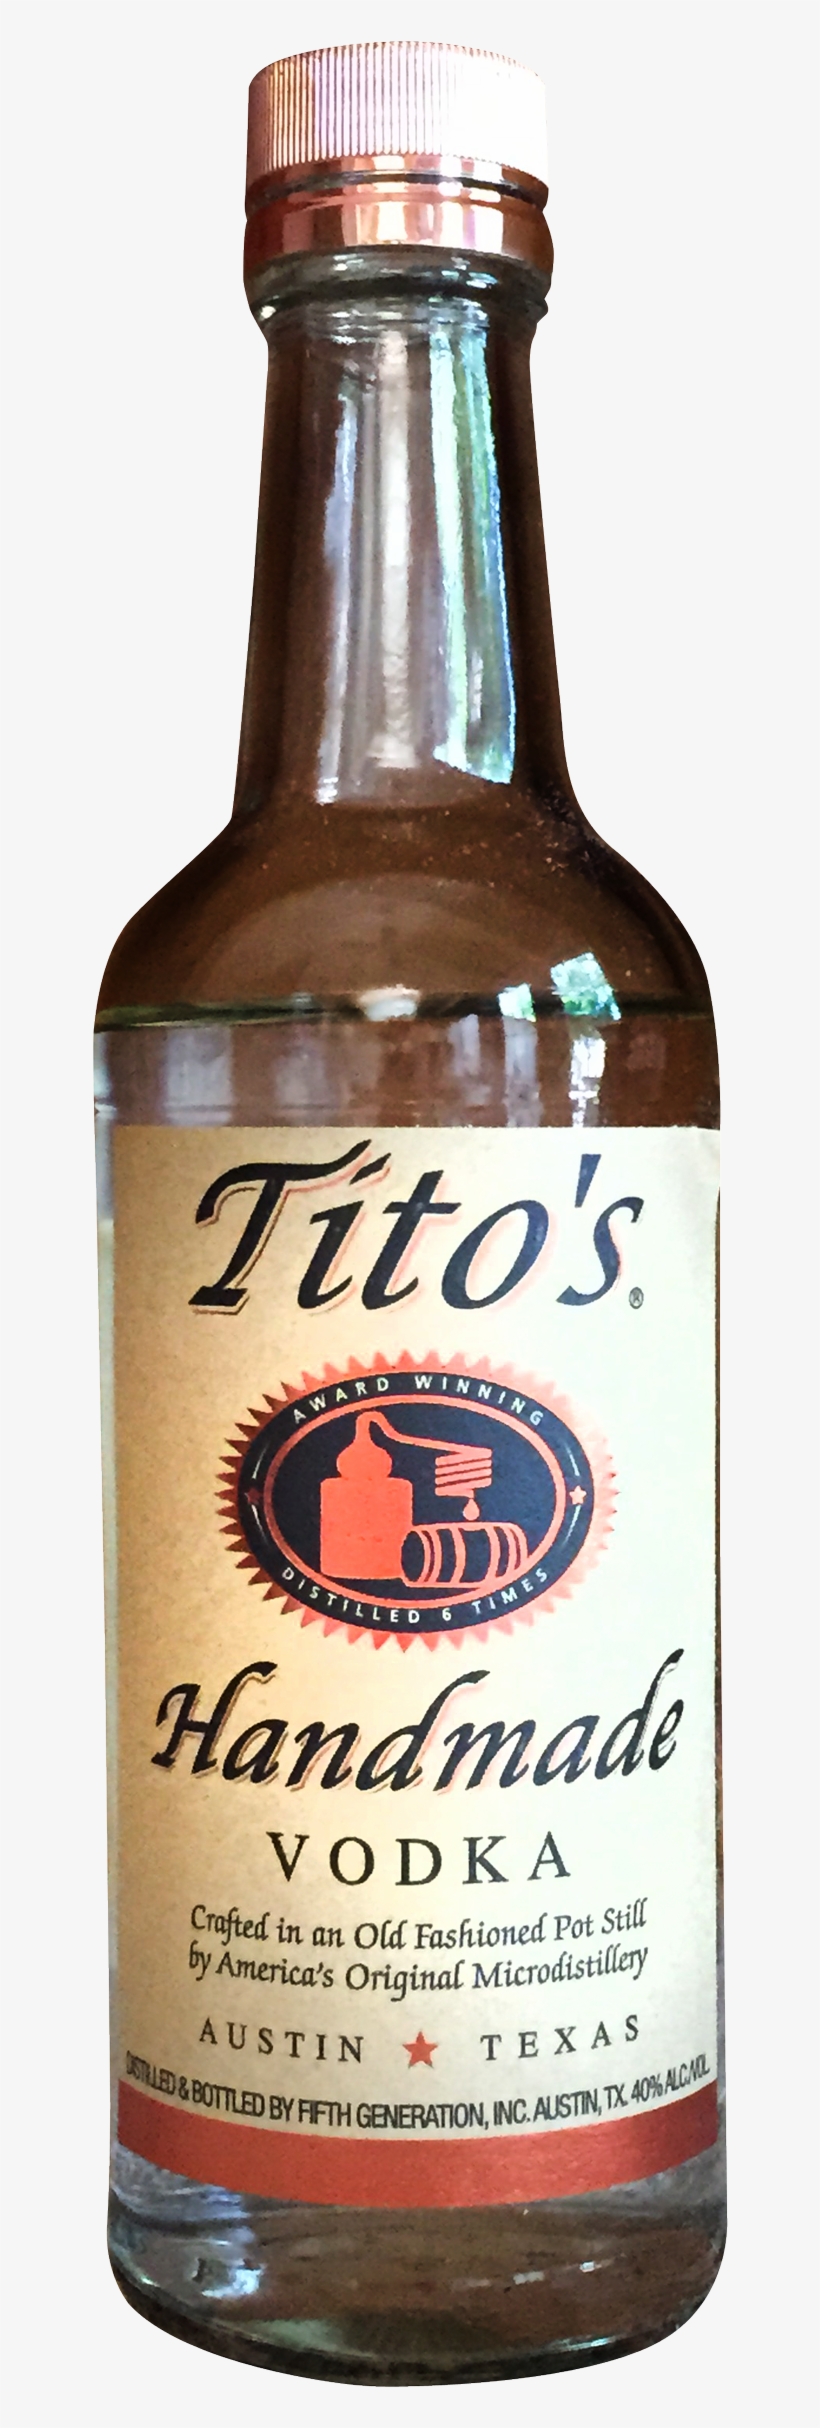 Vodka Bottle Png Image - Tito's Handmade Vodka - 1 L Bottle, transparent png #178941